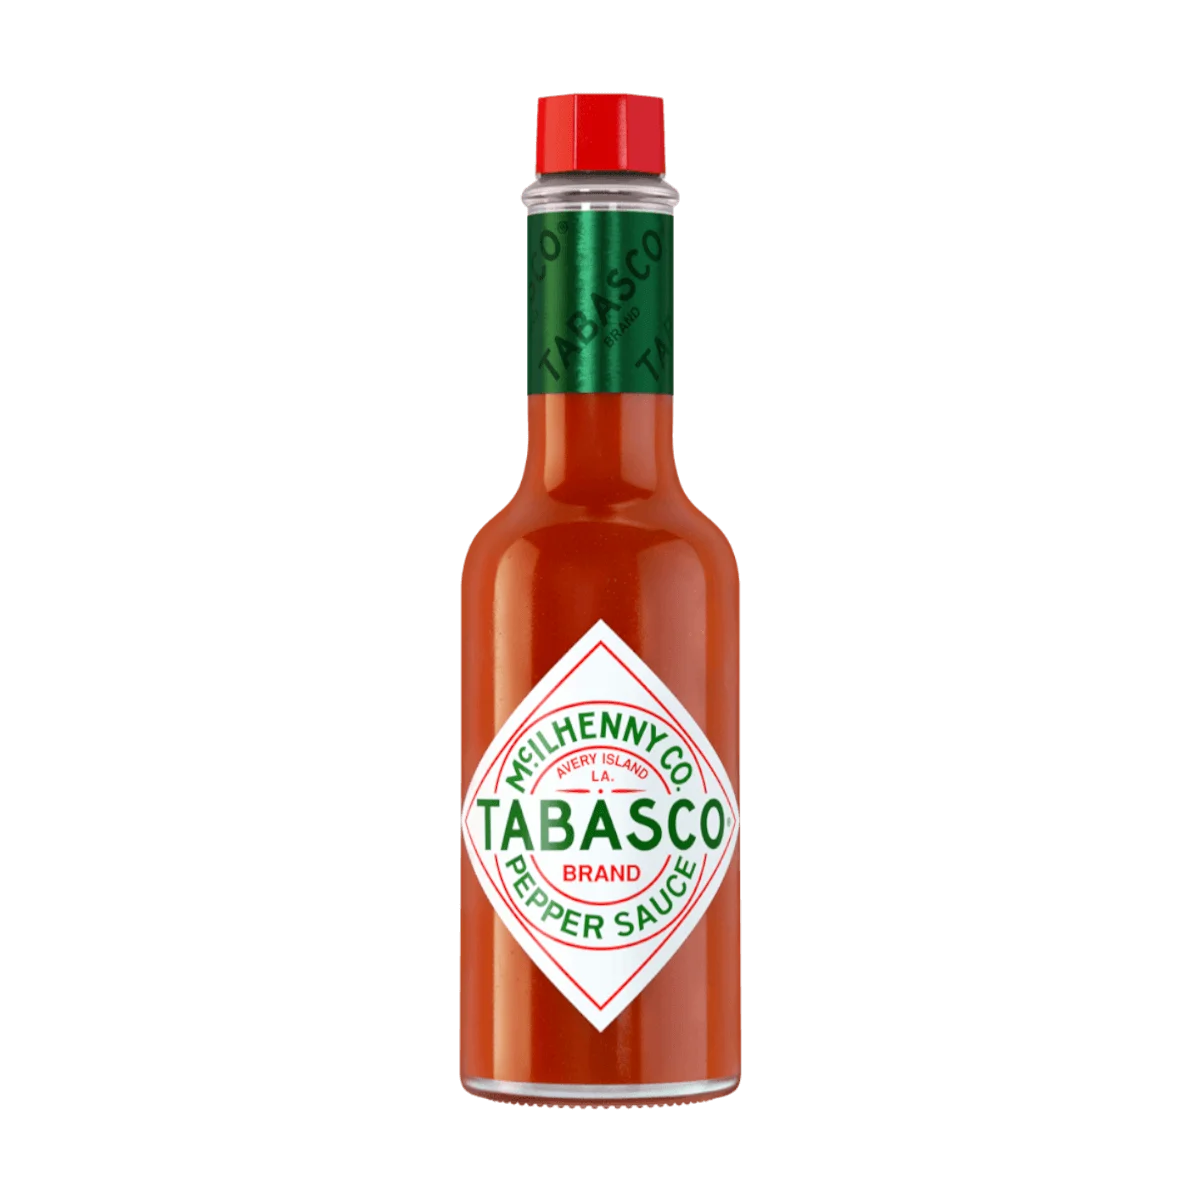 Tabasco Brand Pepper Sauce, 60 ml